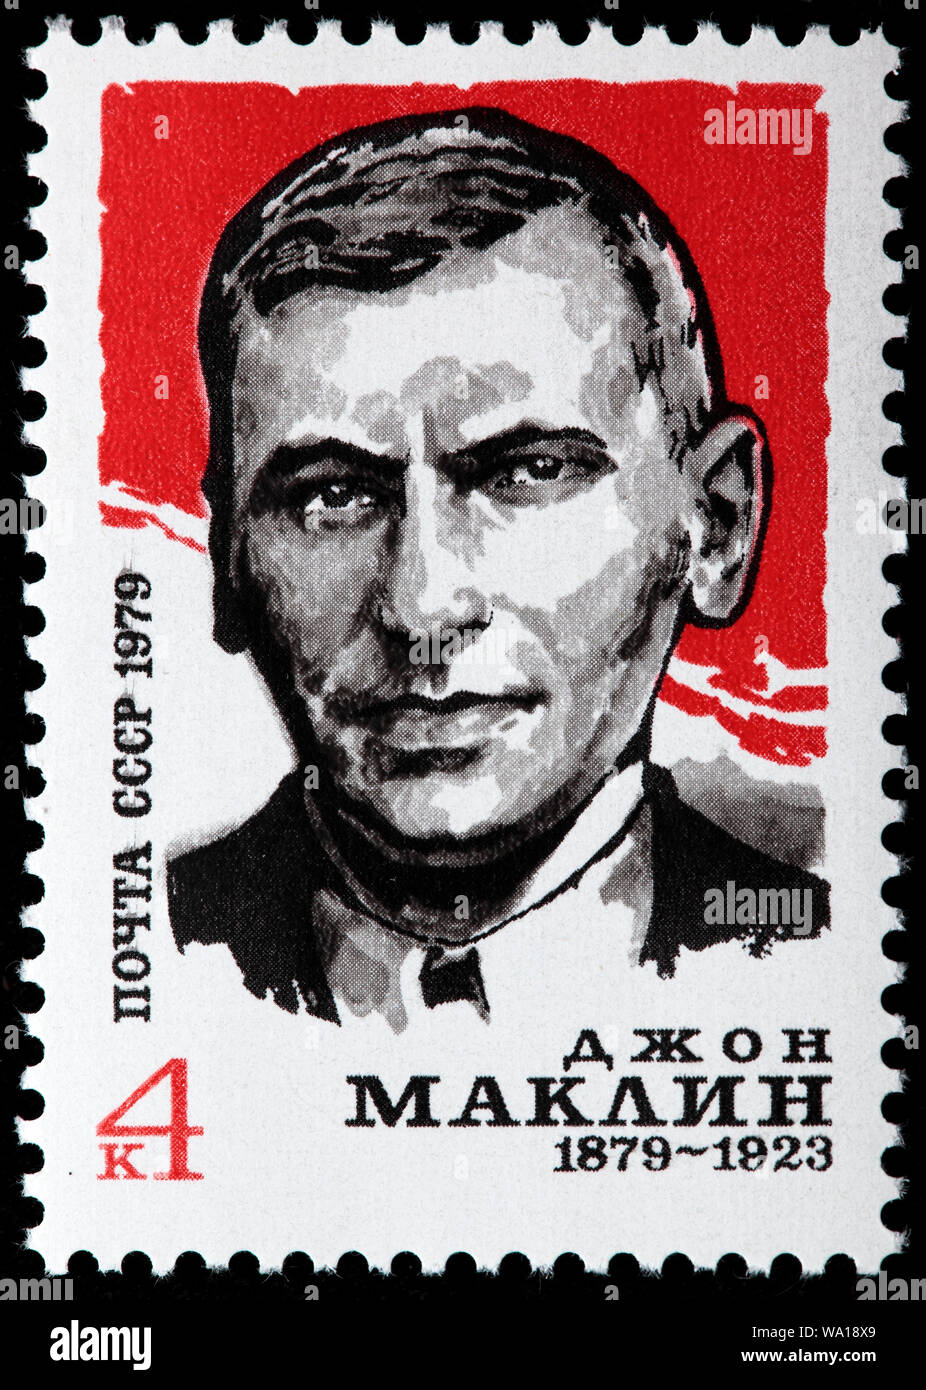 John McLean (1879-1923), instituteur, Écossais, socialiste révolutionnaire, timbre-poste de la Russie, URSS, 1979 Banque D'Images